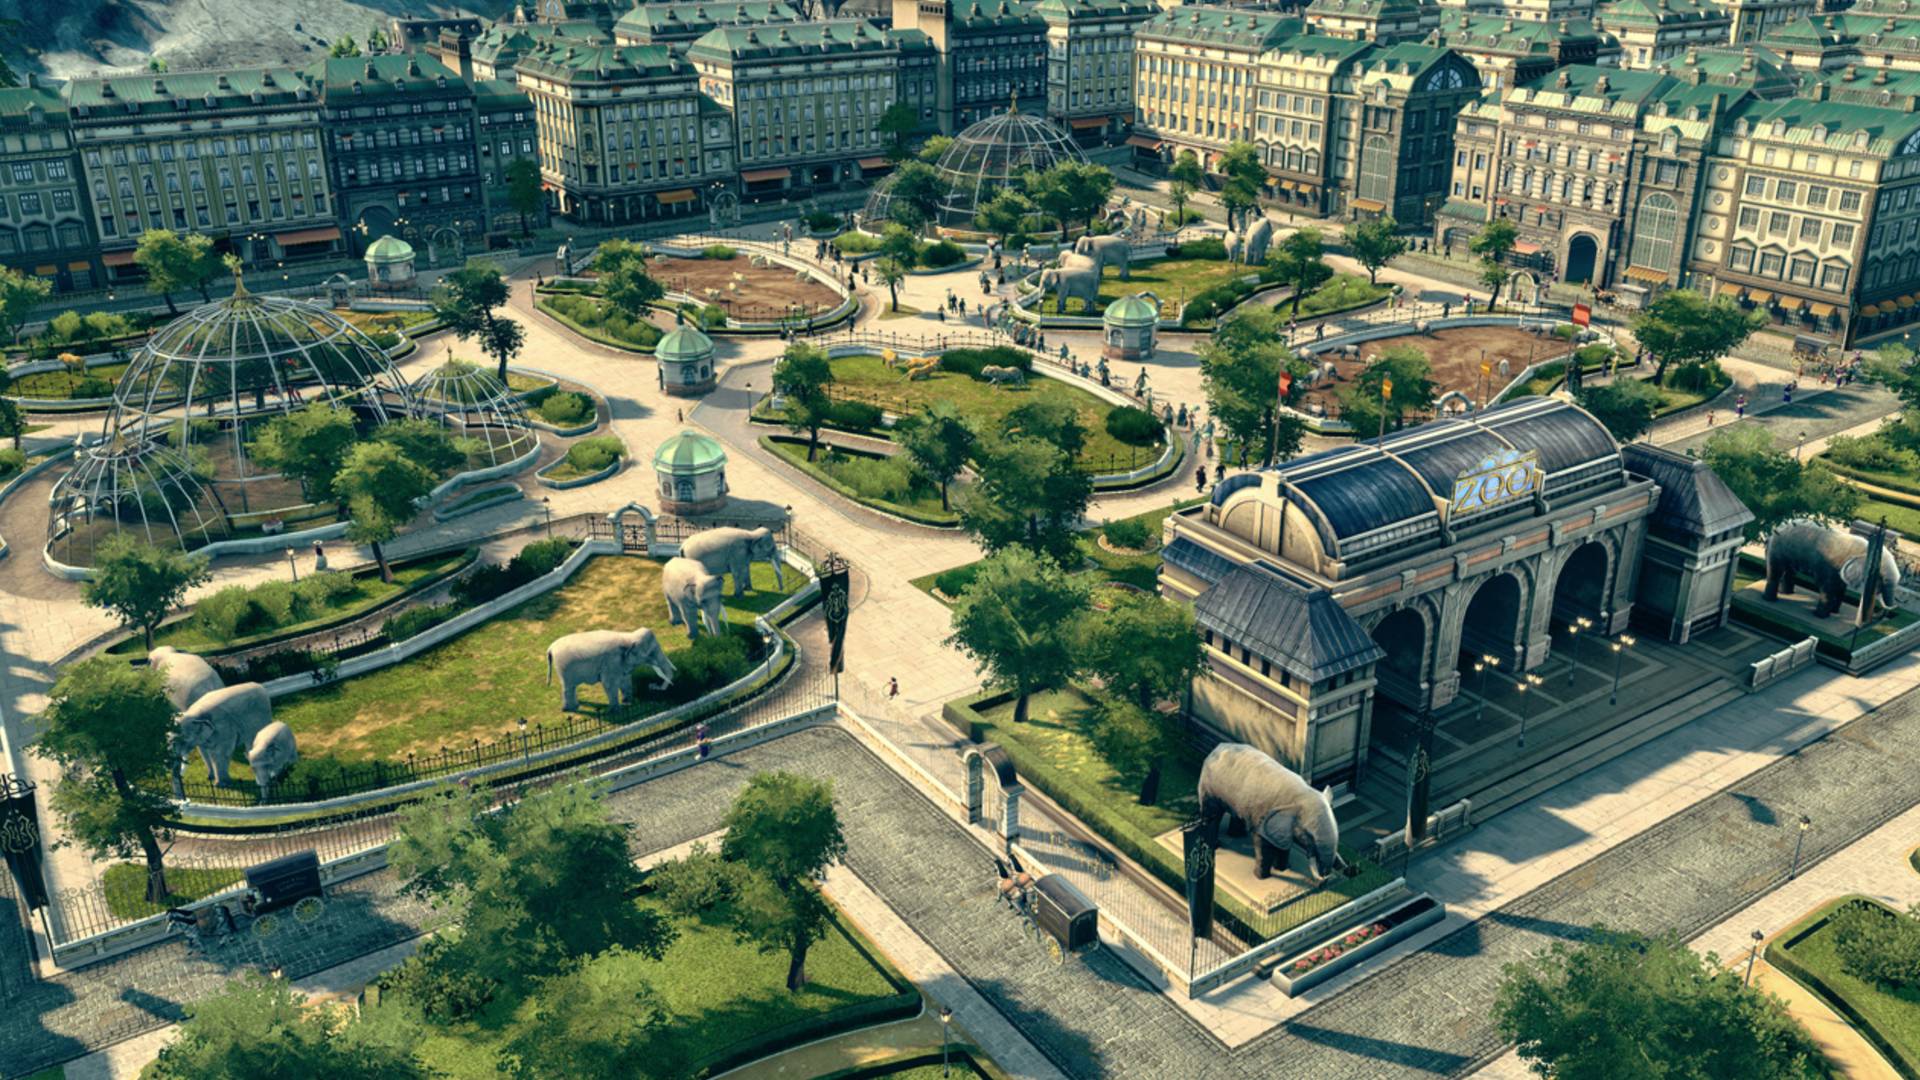 Los mejores juegos de construcción de la ciudad: Anno 1800. La imagen muestra un parque lleno de estatuas y esferas de vidrio